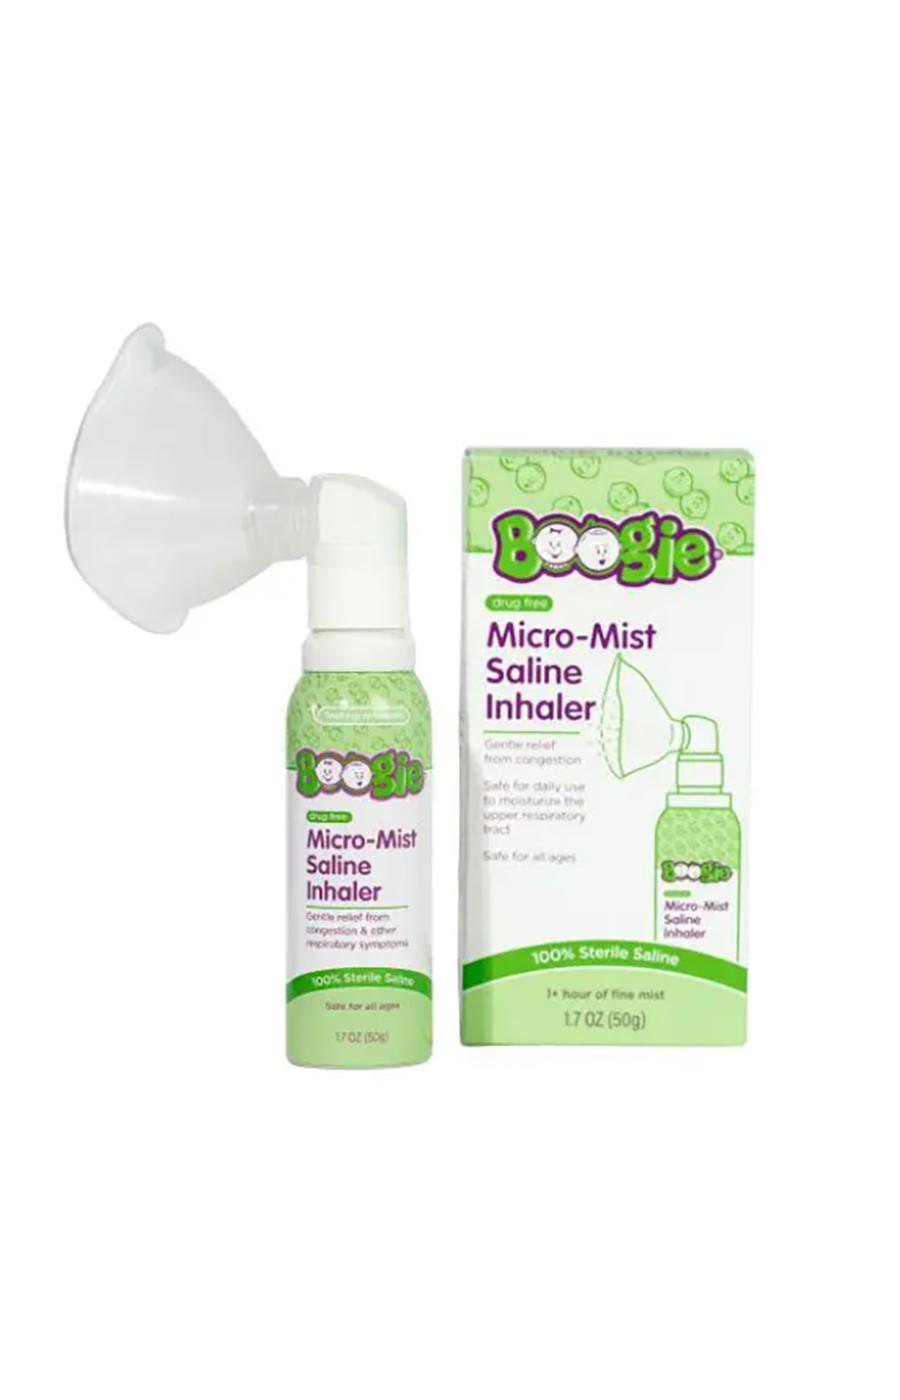 Boogie Micro-Mist Saline Inhaler; image 2 of 2